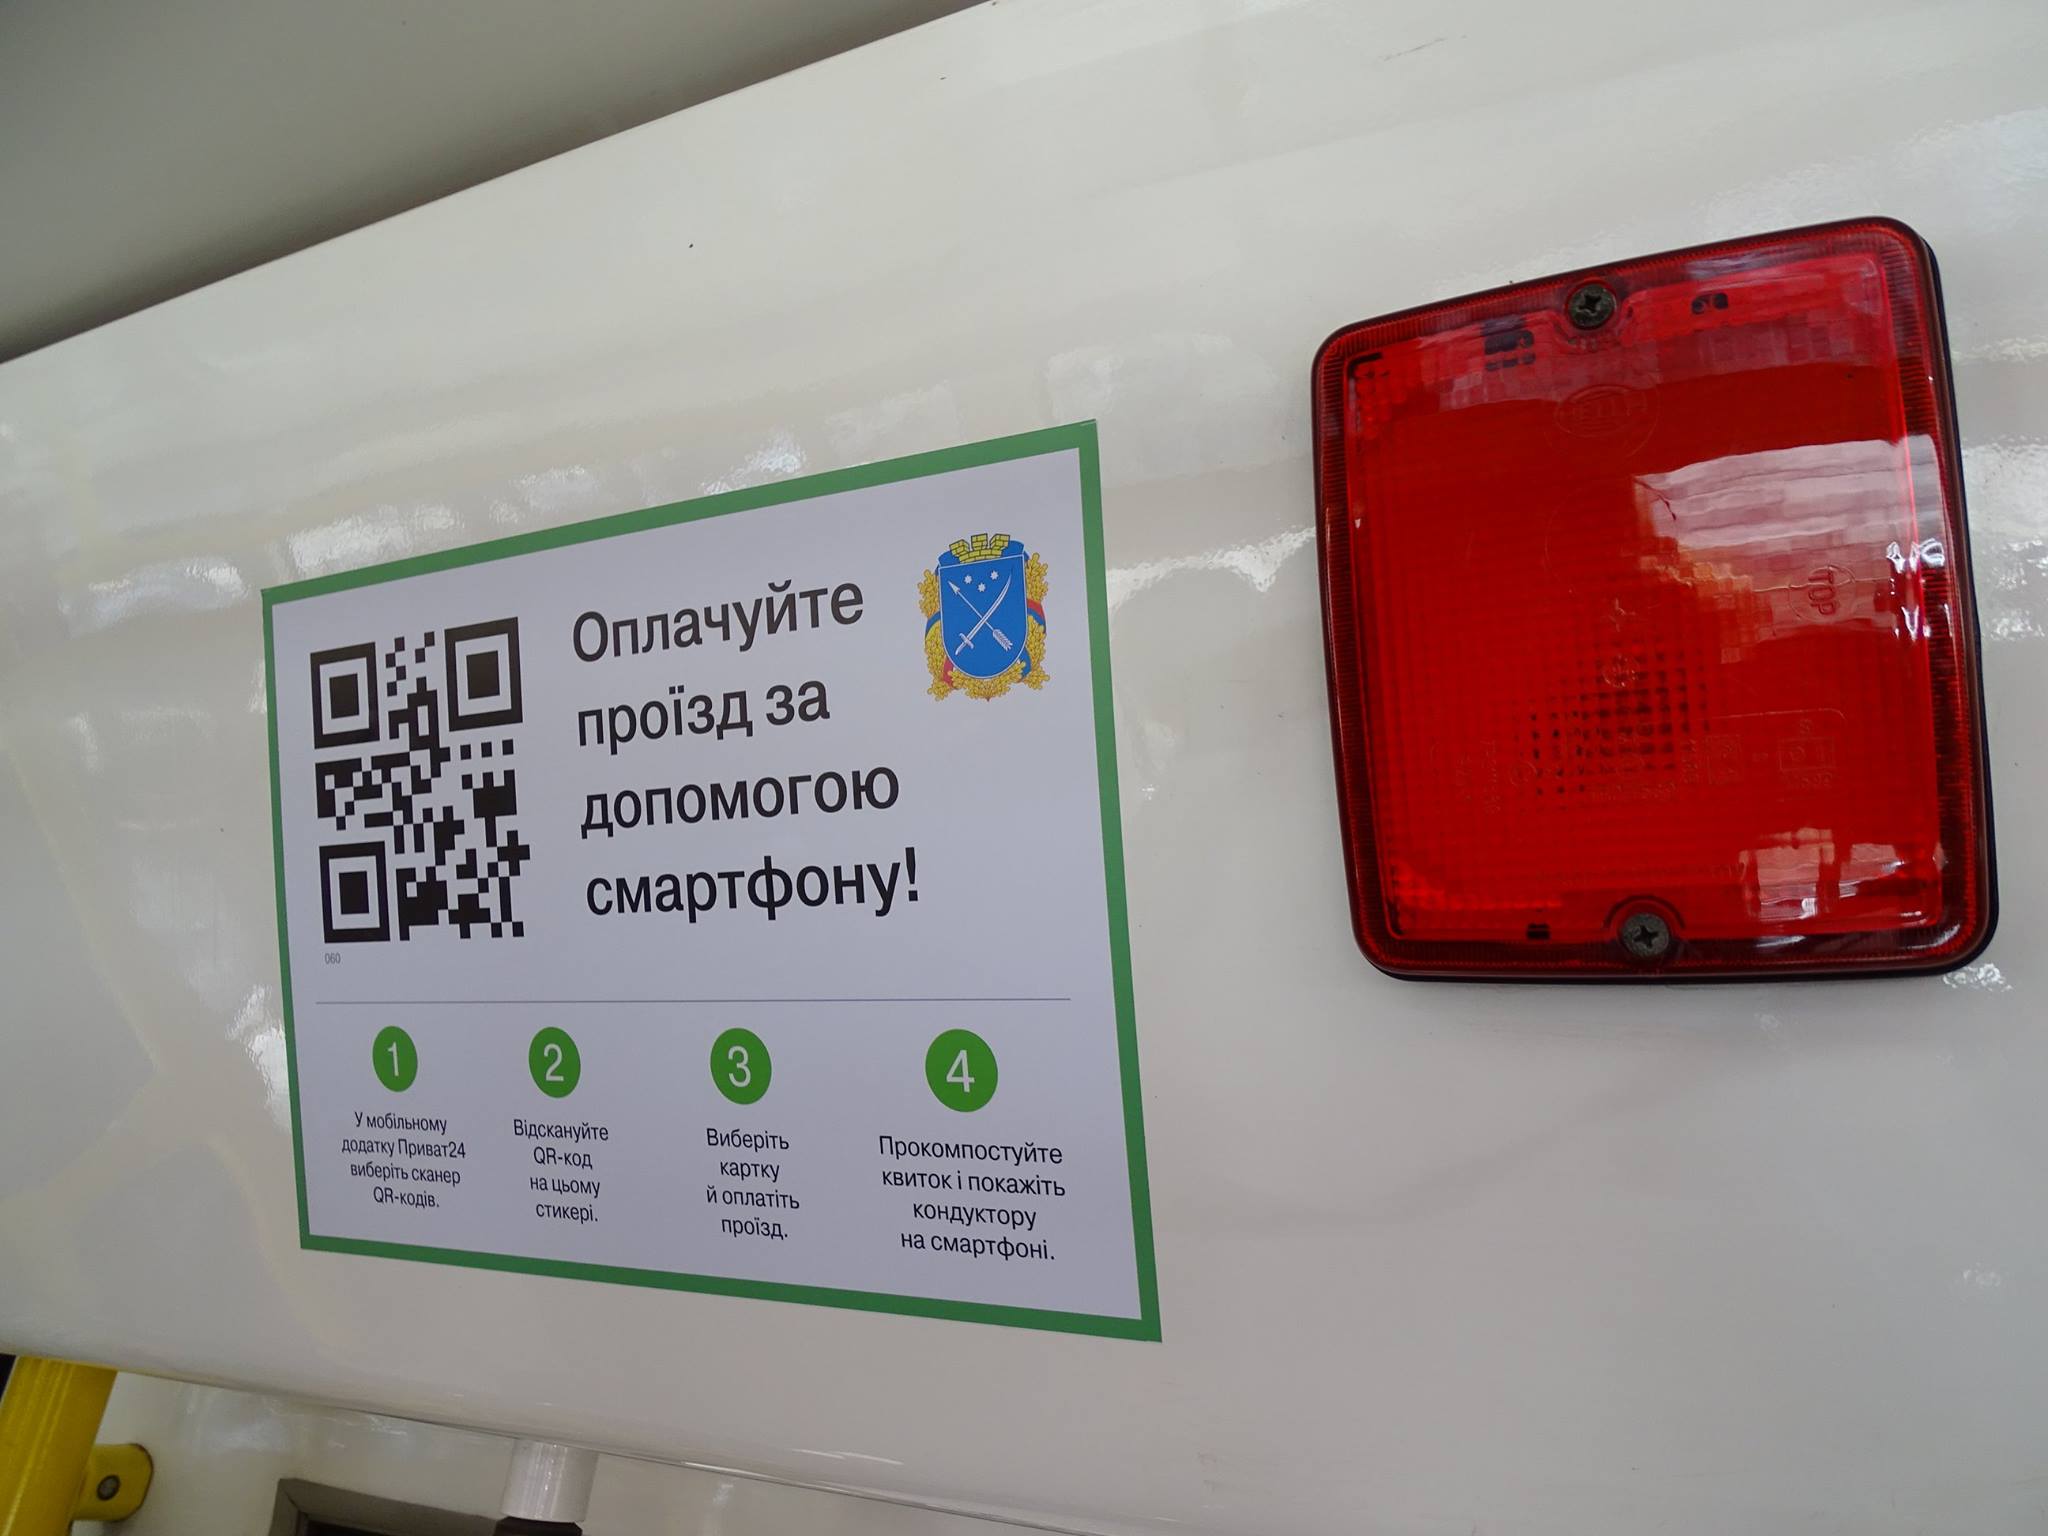 Впервые в Украине: в Днепре появился единый электронный проездной билет